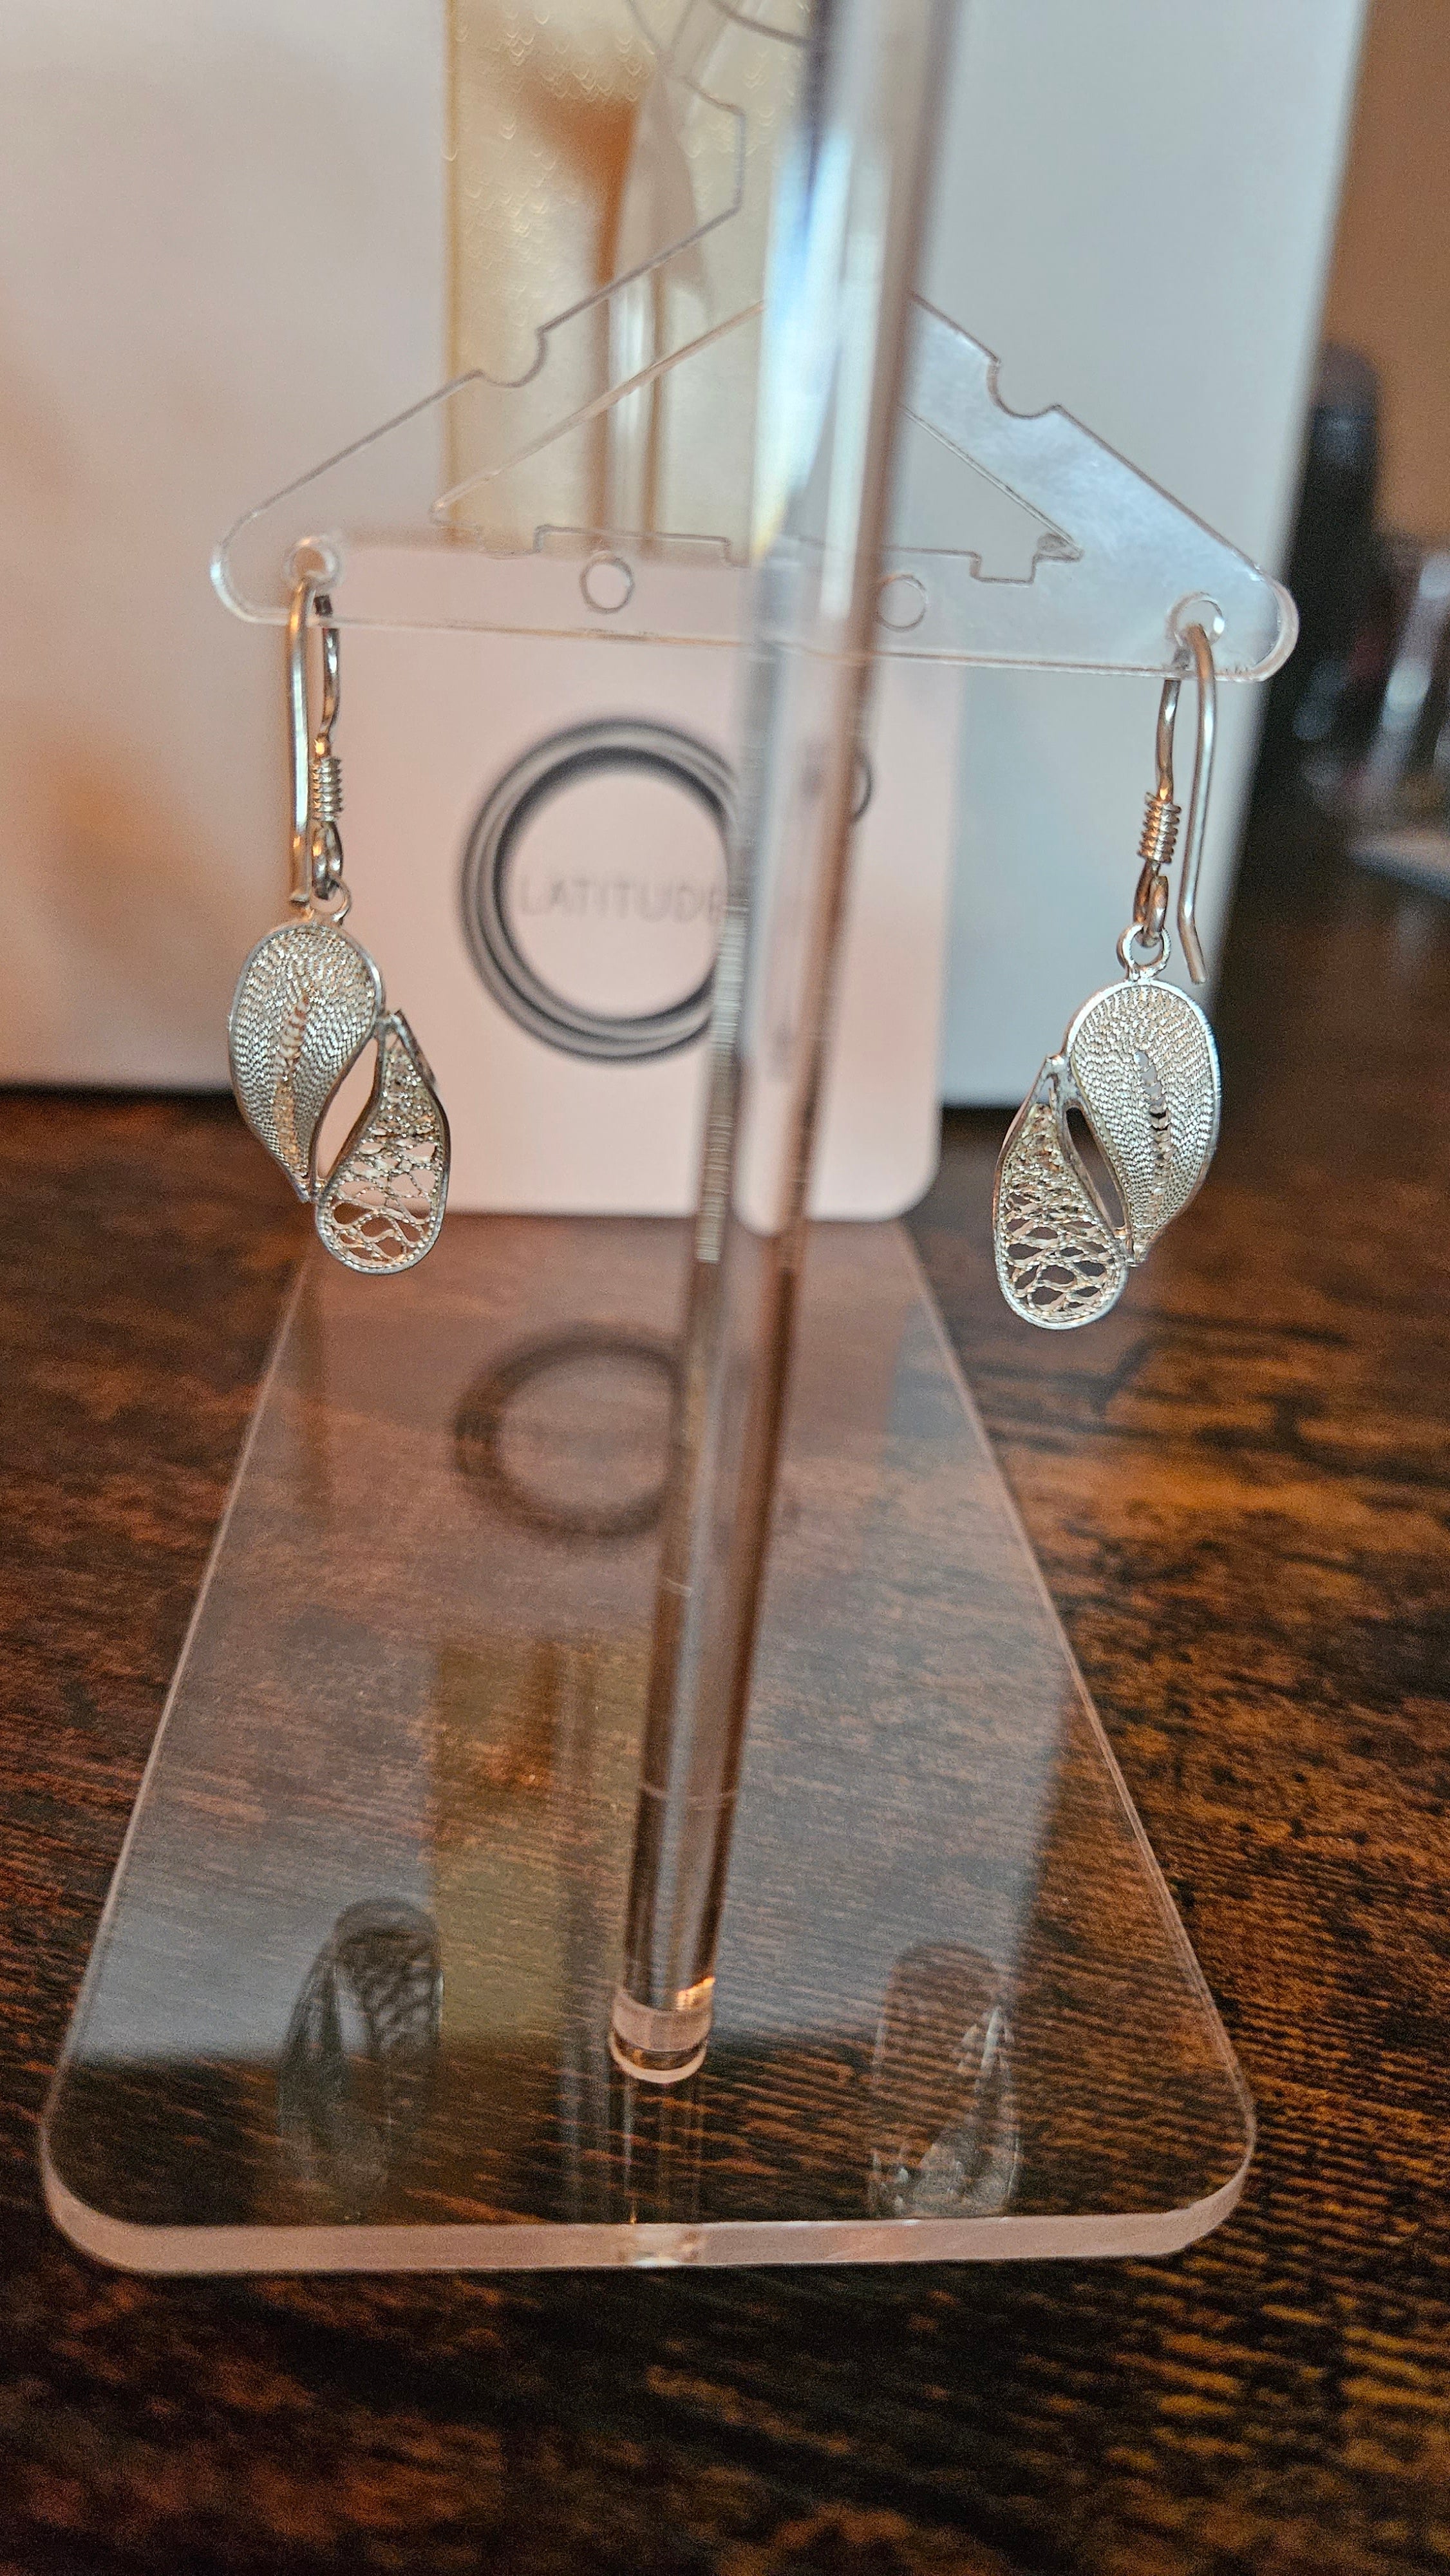 Ecuadorian silver earrings